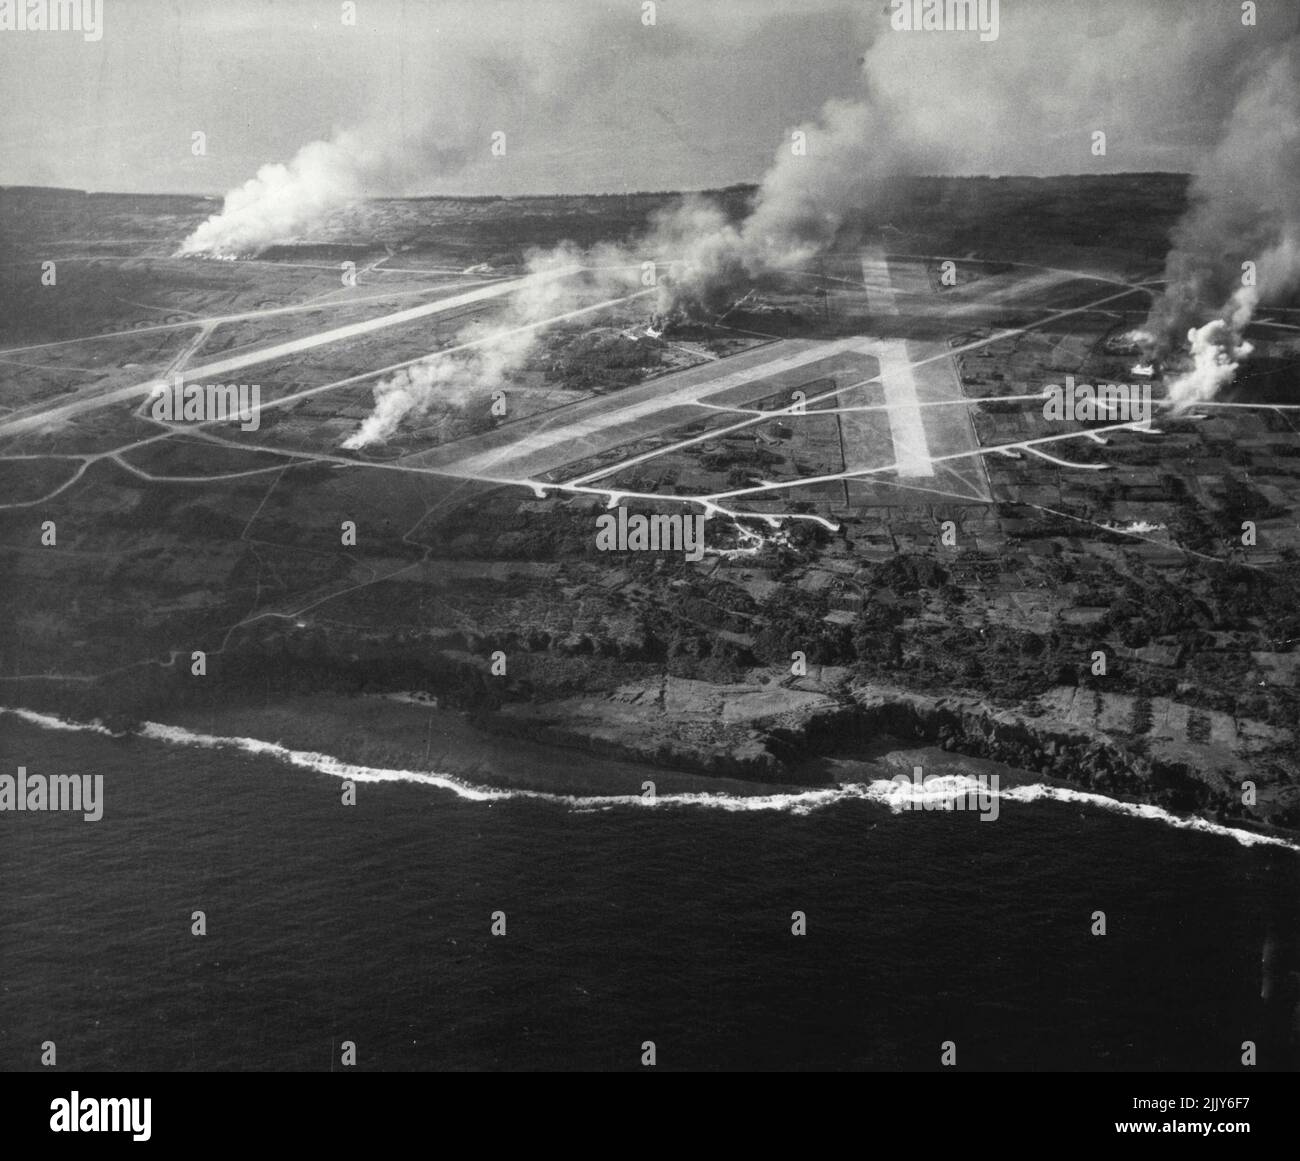 IE Island bombardeada y protegida: Edificios, instalaciones de defensa y aviones en llamas como resultado de los bombardeos y las pruebas realizadas por aviones de transporte de la Tercera Flota del Pacífico bajo el mando del almirante William F. Halsay, Jr., USN, que atacó IE Island el 9 de octubre de 1944. (WLT). La isla IE está justo al oeste de la isla de Okinawa, en el grupo Ryukyu, a unas 850 millas de Tokio. 17 de octubre de 1944. (Foto de la fotografía oficial de la Marina de los Estados Unidos). Foto de stock